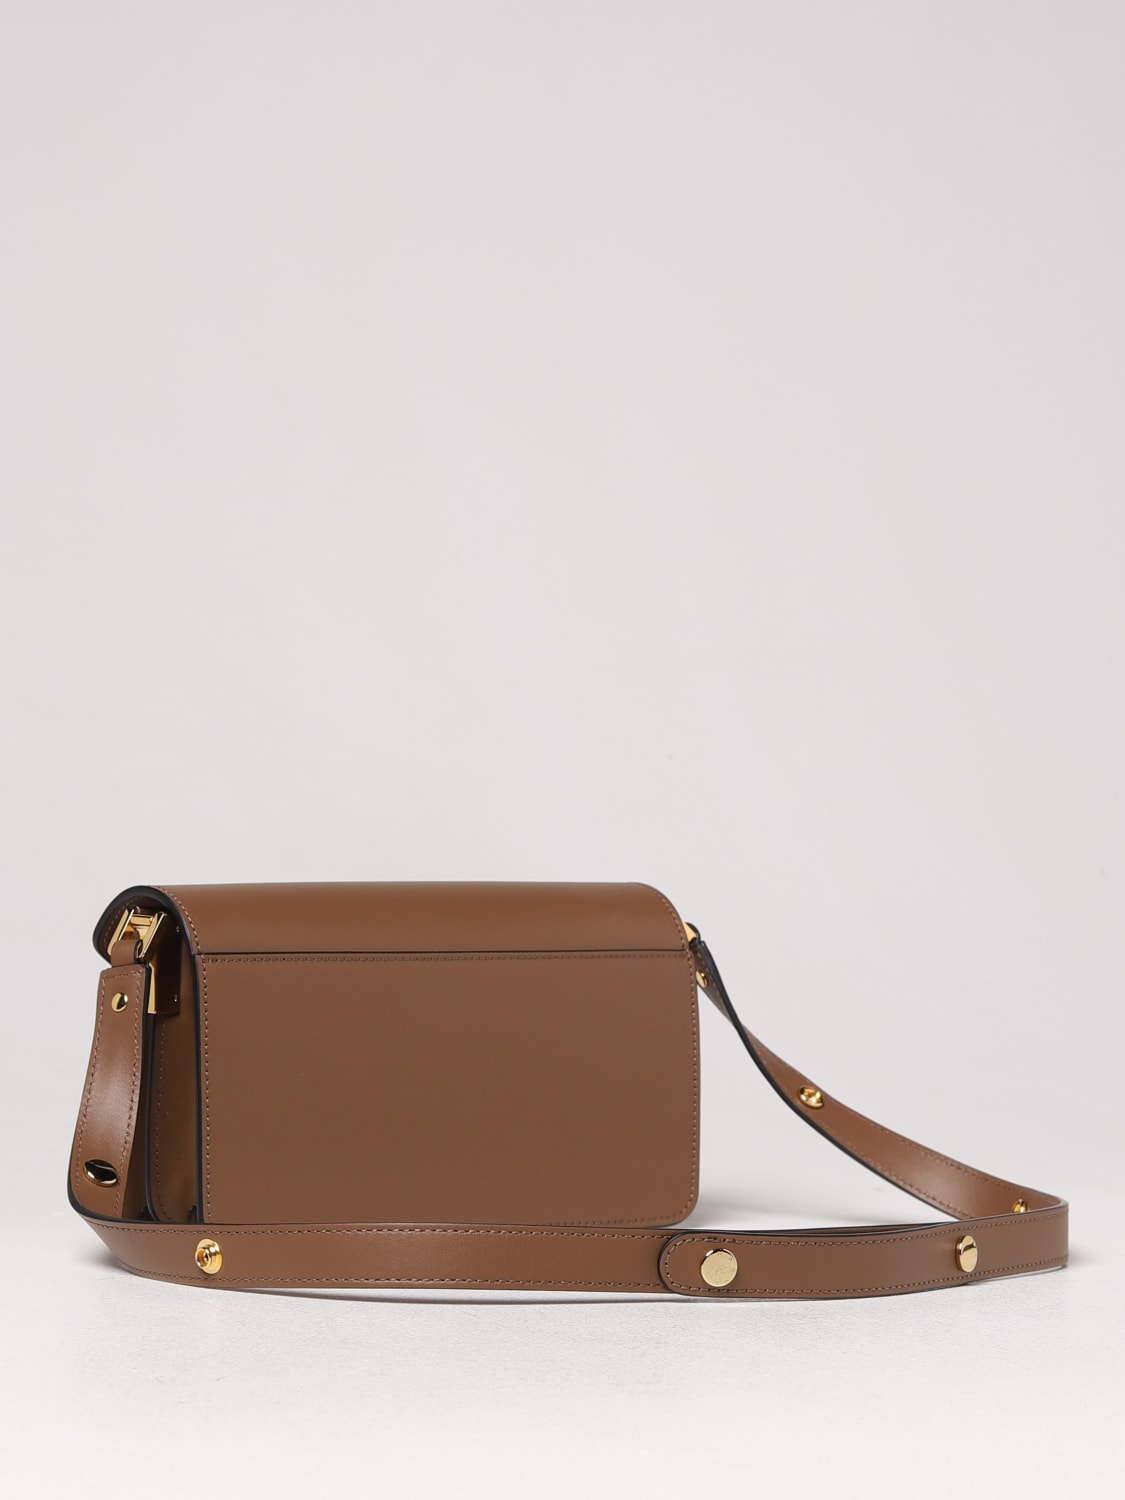 MARNI: Trunk bag in leather - Brown  Marni shoulder bag SBMP0121U0LV589  online at